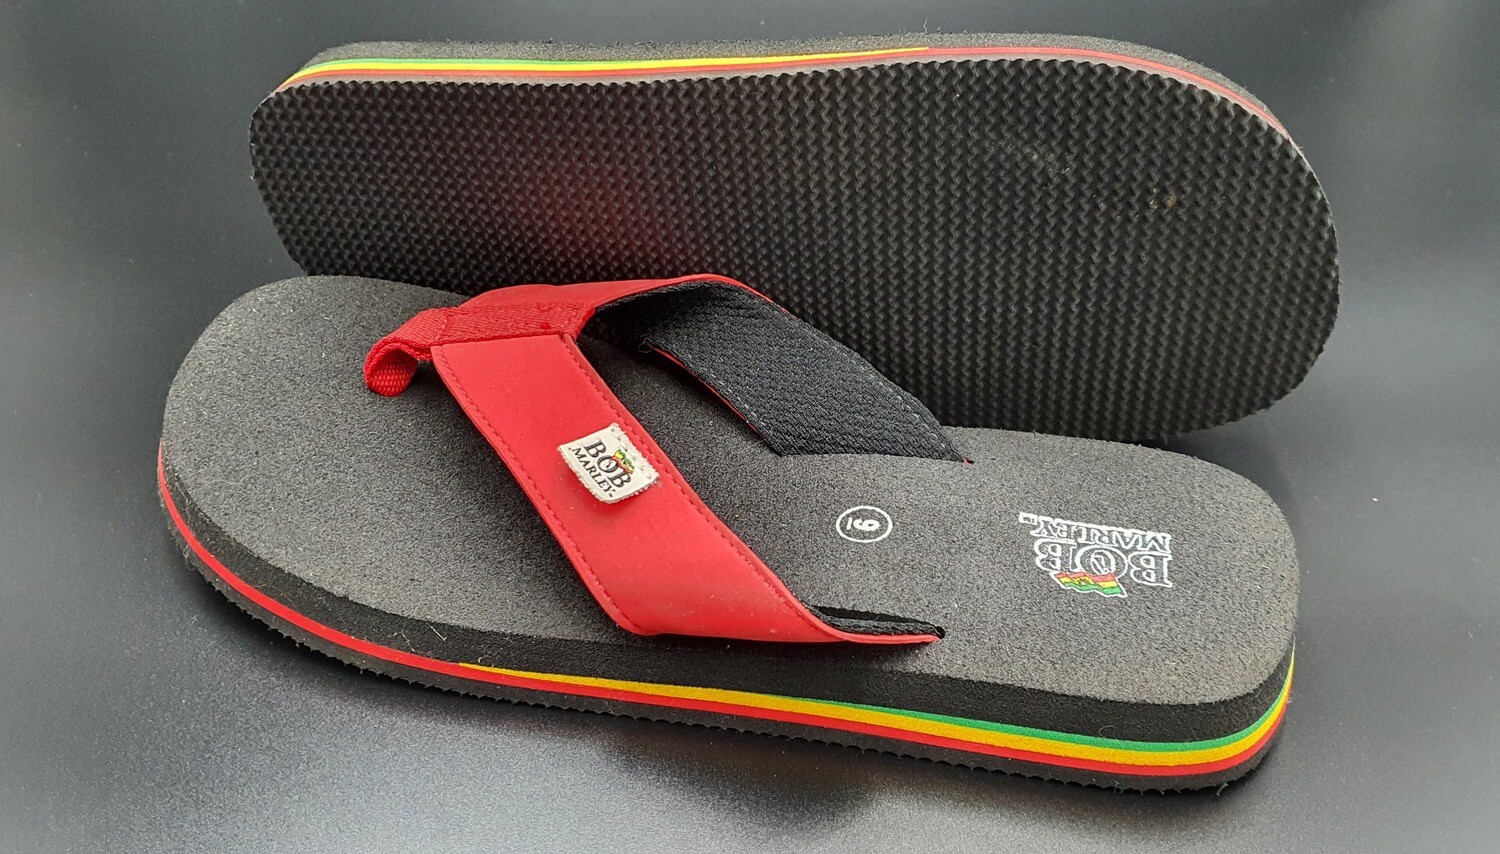 BOB Marley Herren Flip-Flops schwarz Rot Gelb Grün Gr. 42